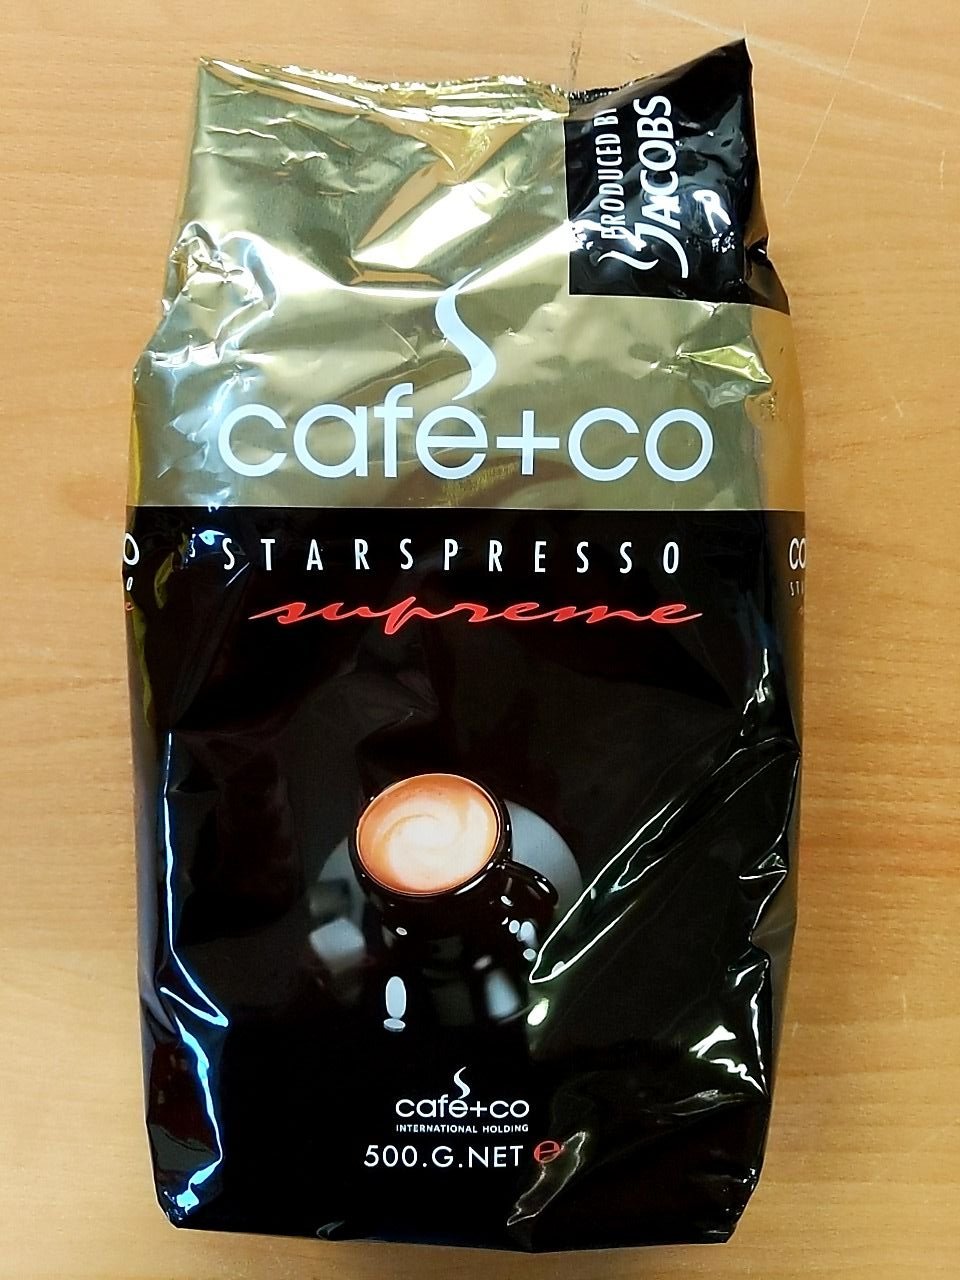 Rozpustná káva Cafe+co Starspresso supreme, 500 gr